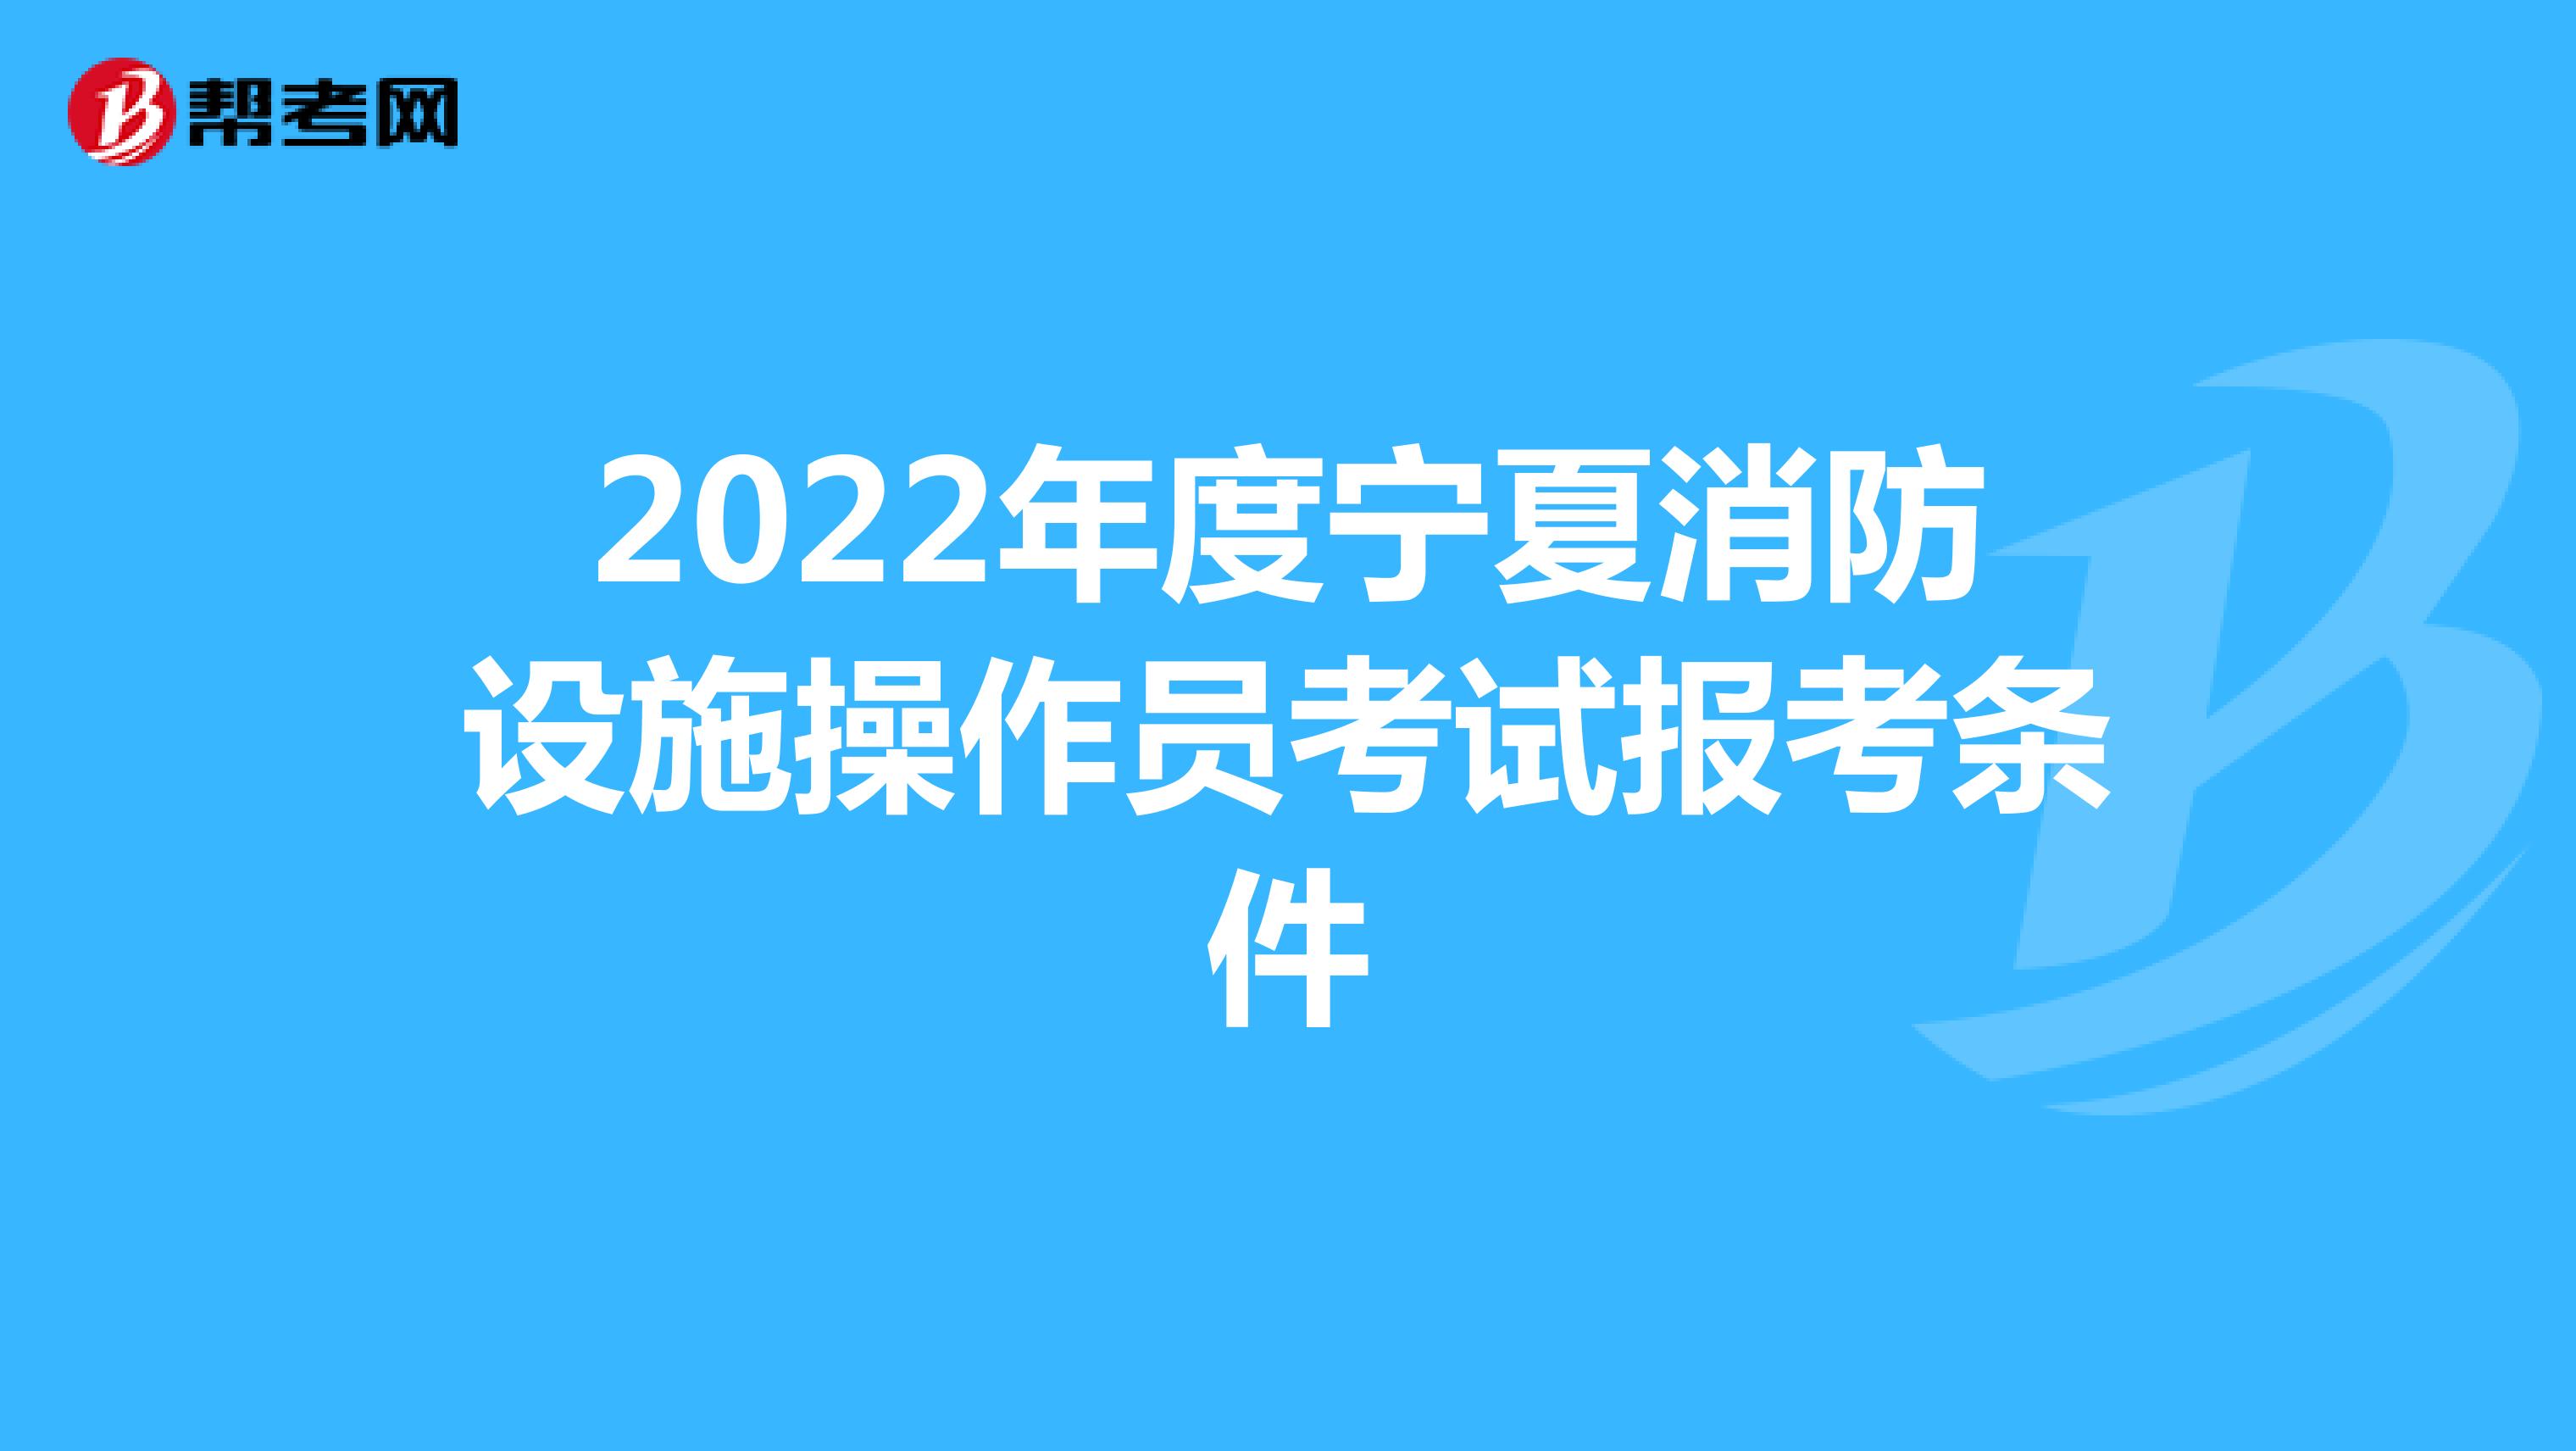 2022年度宁夏消防设施操作员考试报考条件